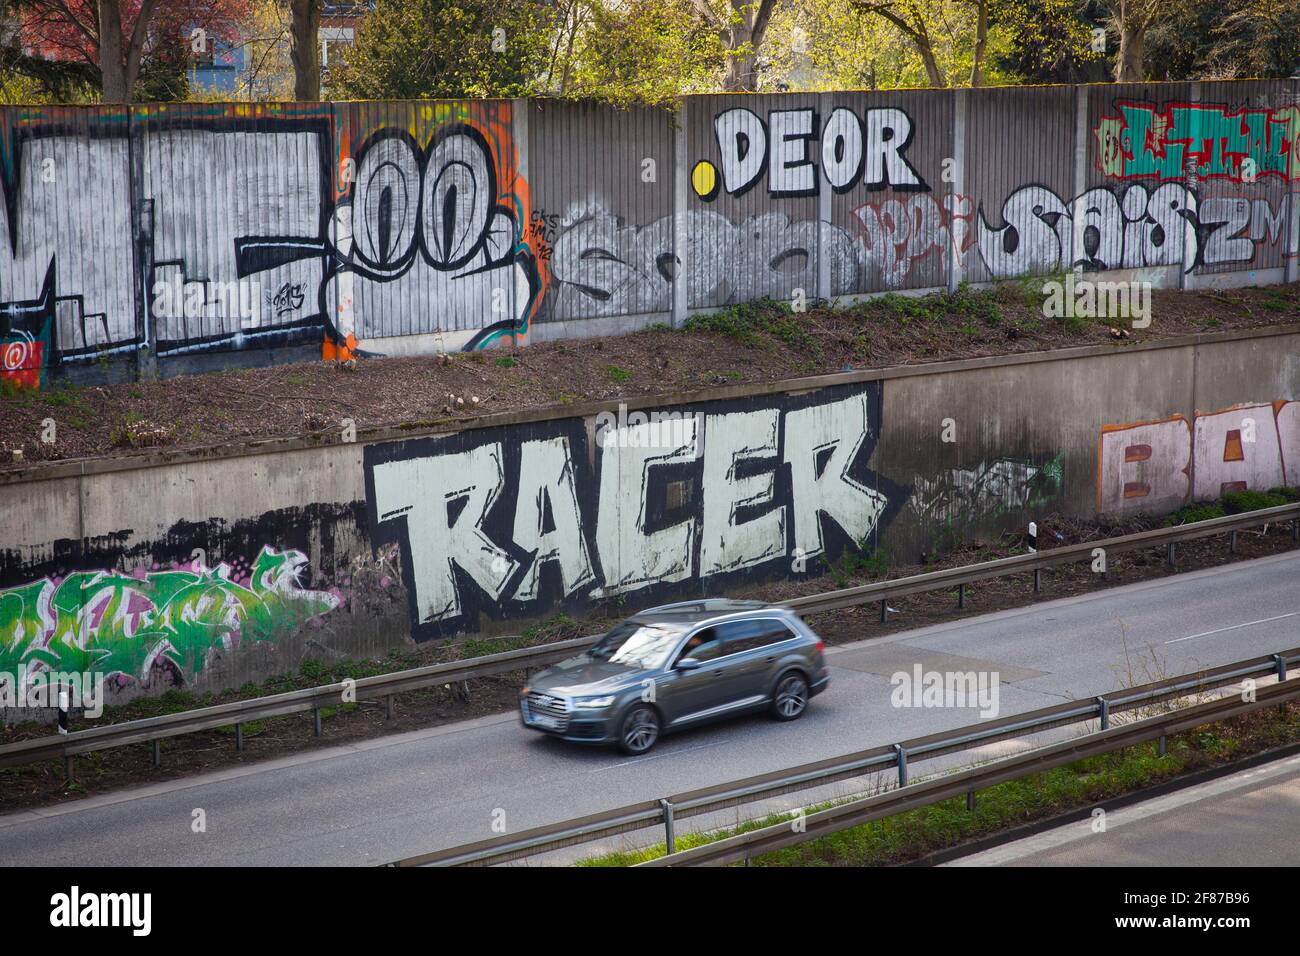 graffiti sur la barrière sonore de l'autobahn A 57 dans le quartier Neu-Ehrenfeld, Cologne, Allemagne. Graffite an der Schallschutzwand der Autobahn A 57 Banque D'Images